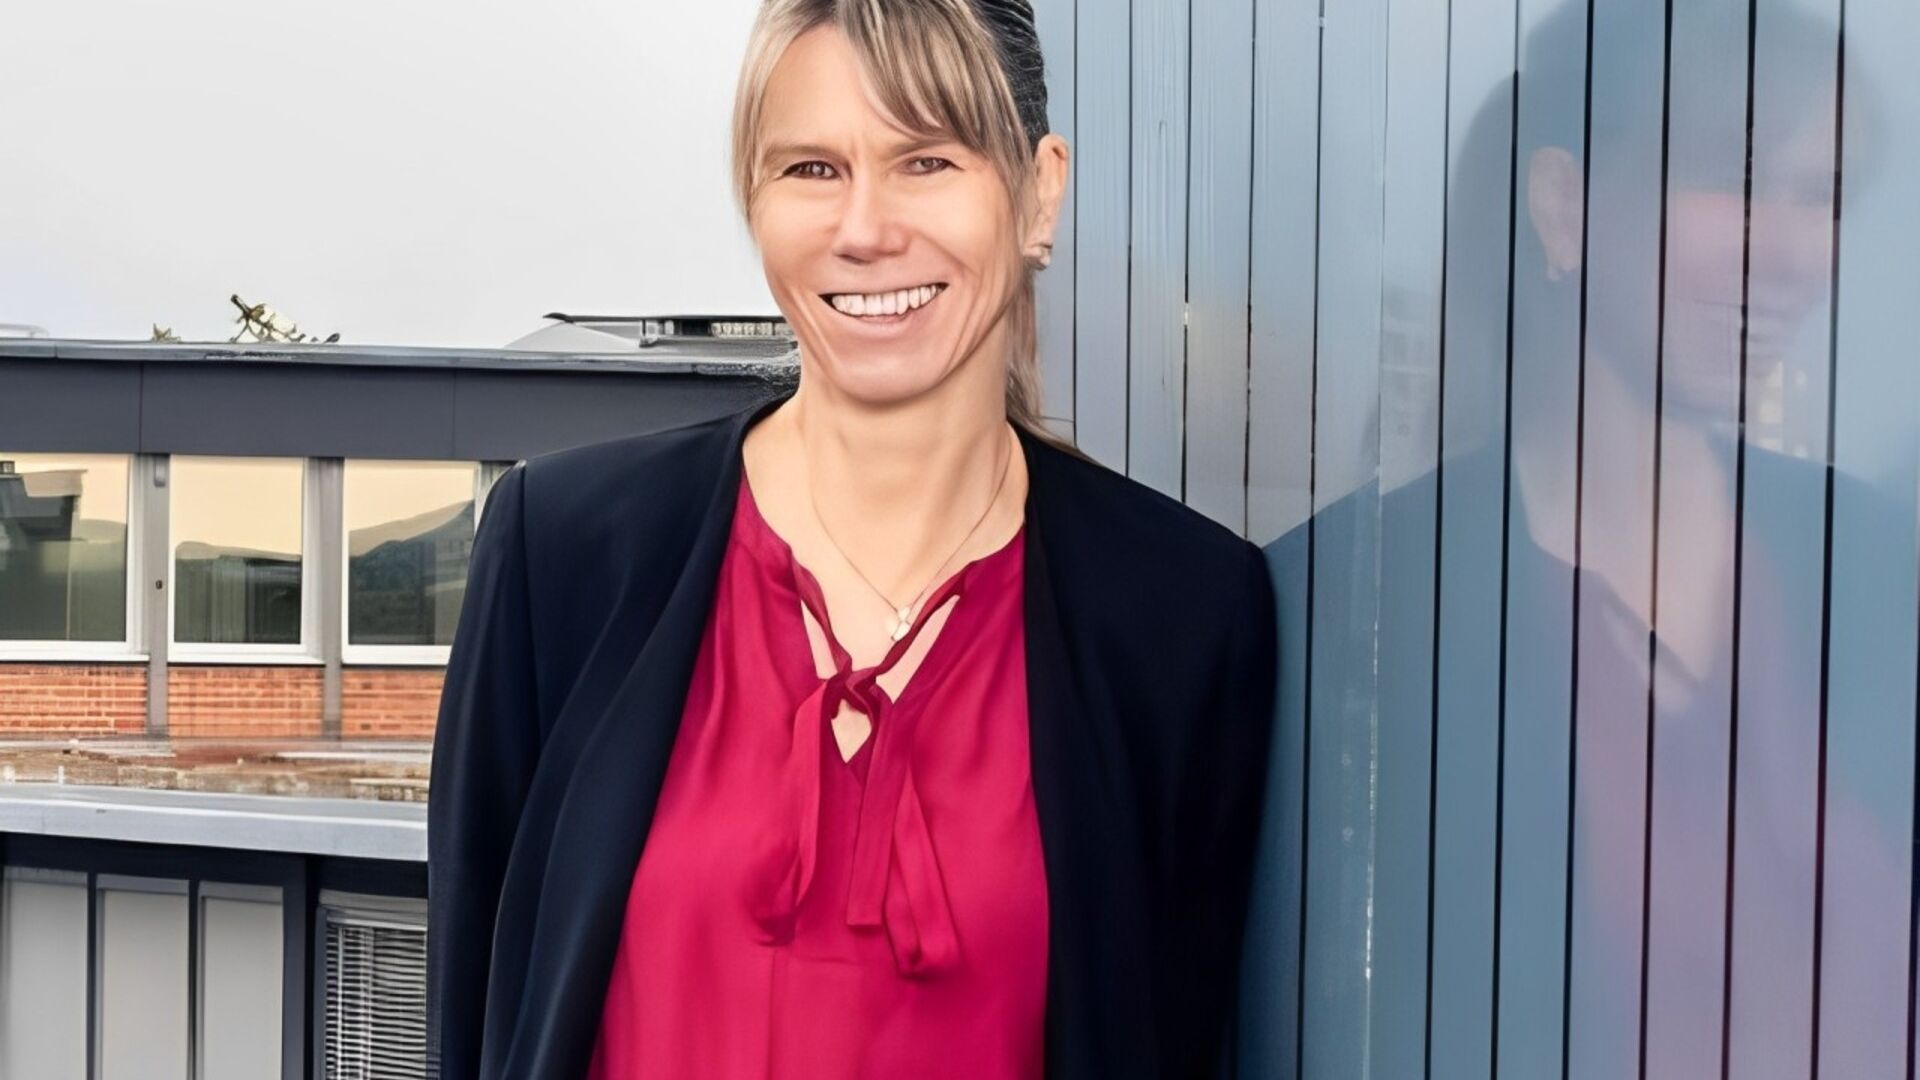 Tanja Zimmermann: intervista alla Direttrice dell’EMPA sul progetto svizzero “Mining the Atmosphere” in collaborazione con l’EAWAG